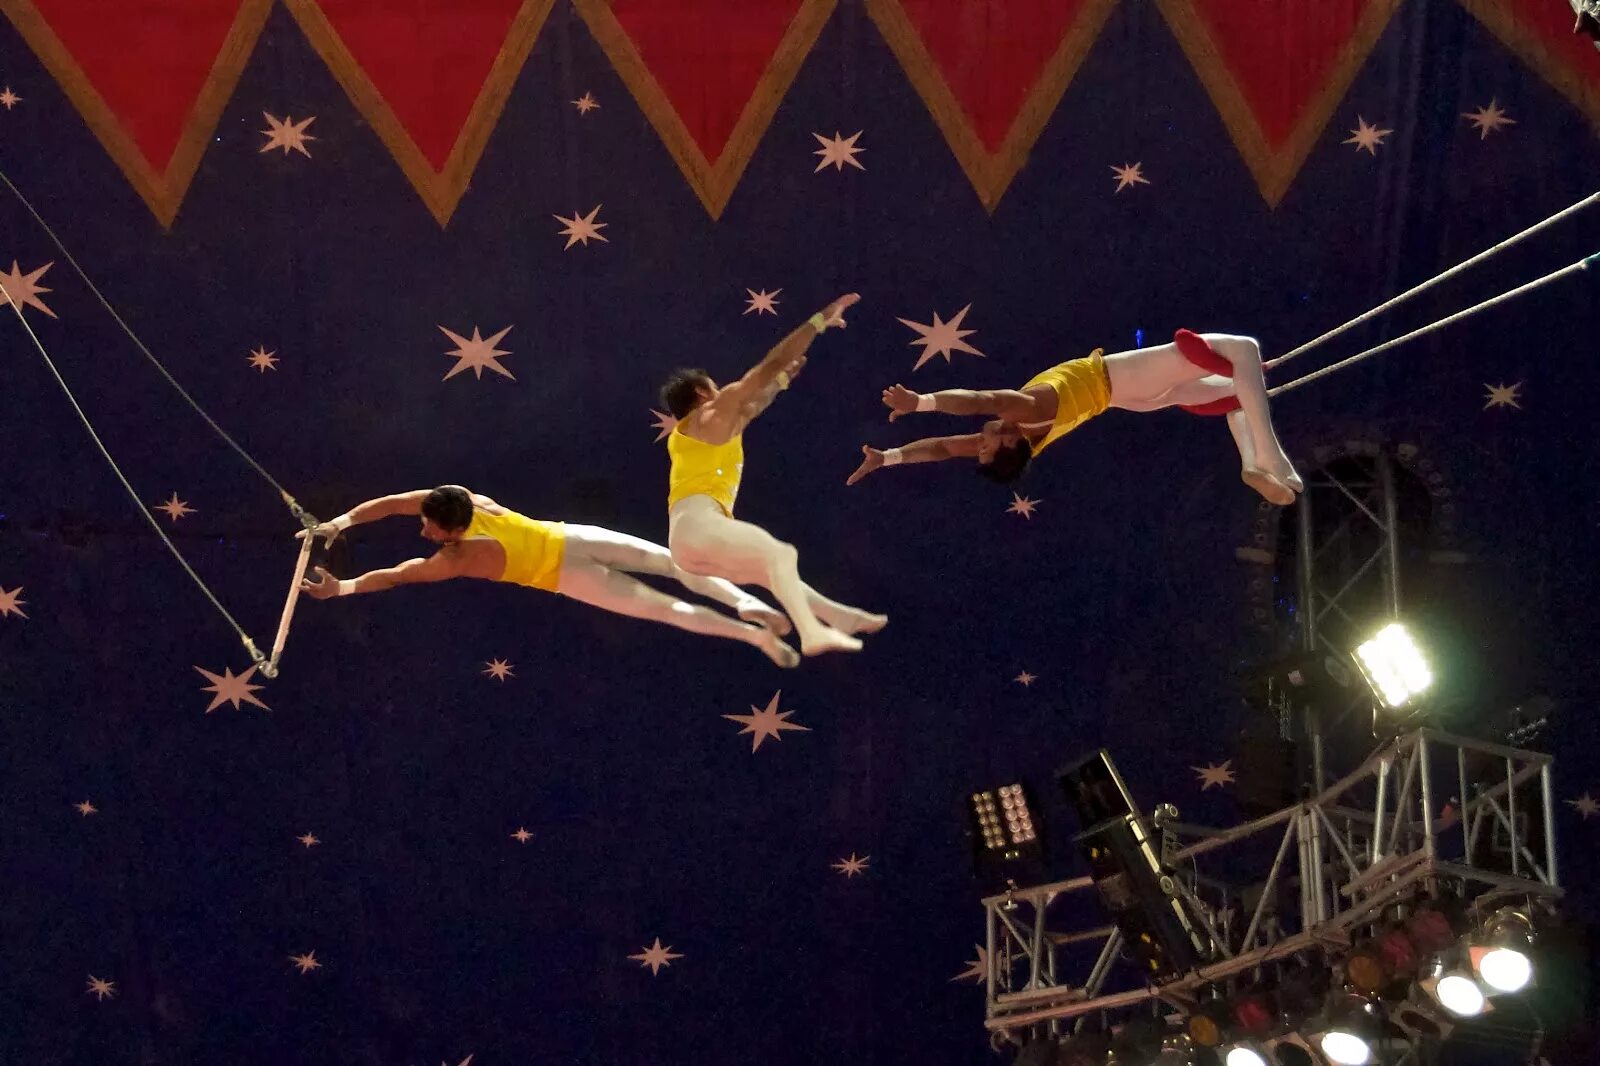 Современная акробатика. Цирк Trapeze artists. Цирк дю солей воздушные гимнасты. Гимнасты в цирке. Акробаты в цирке.